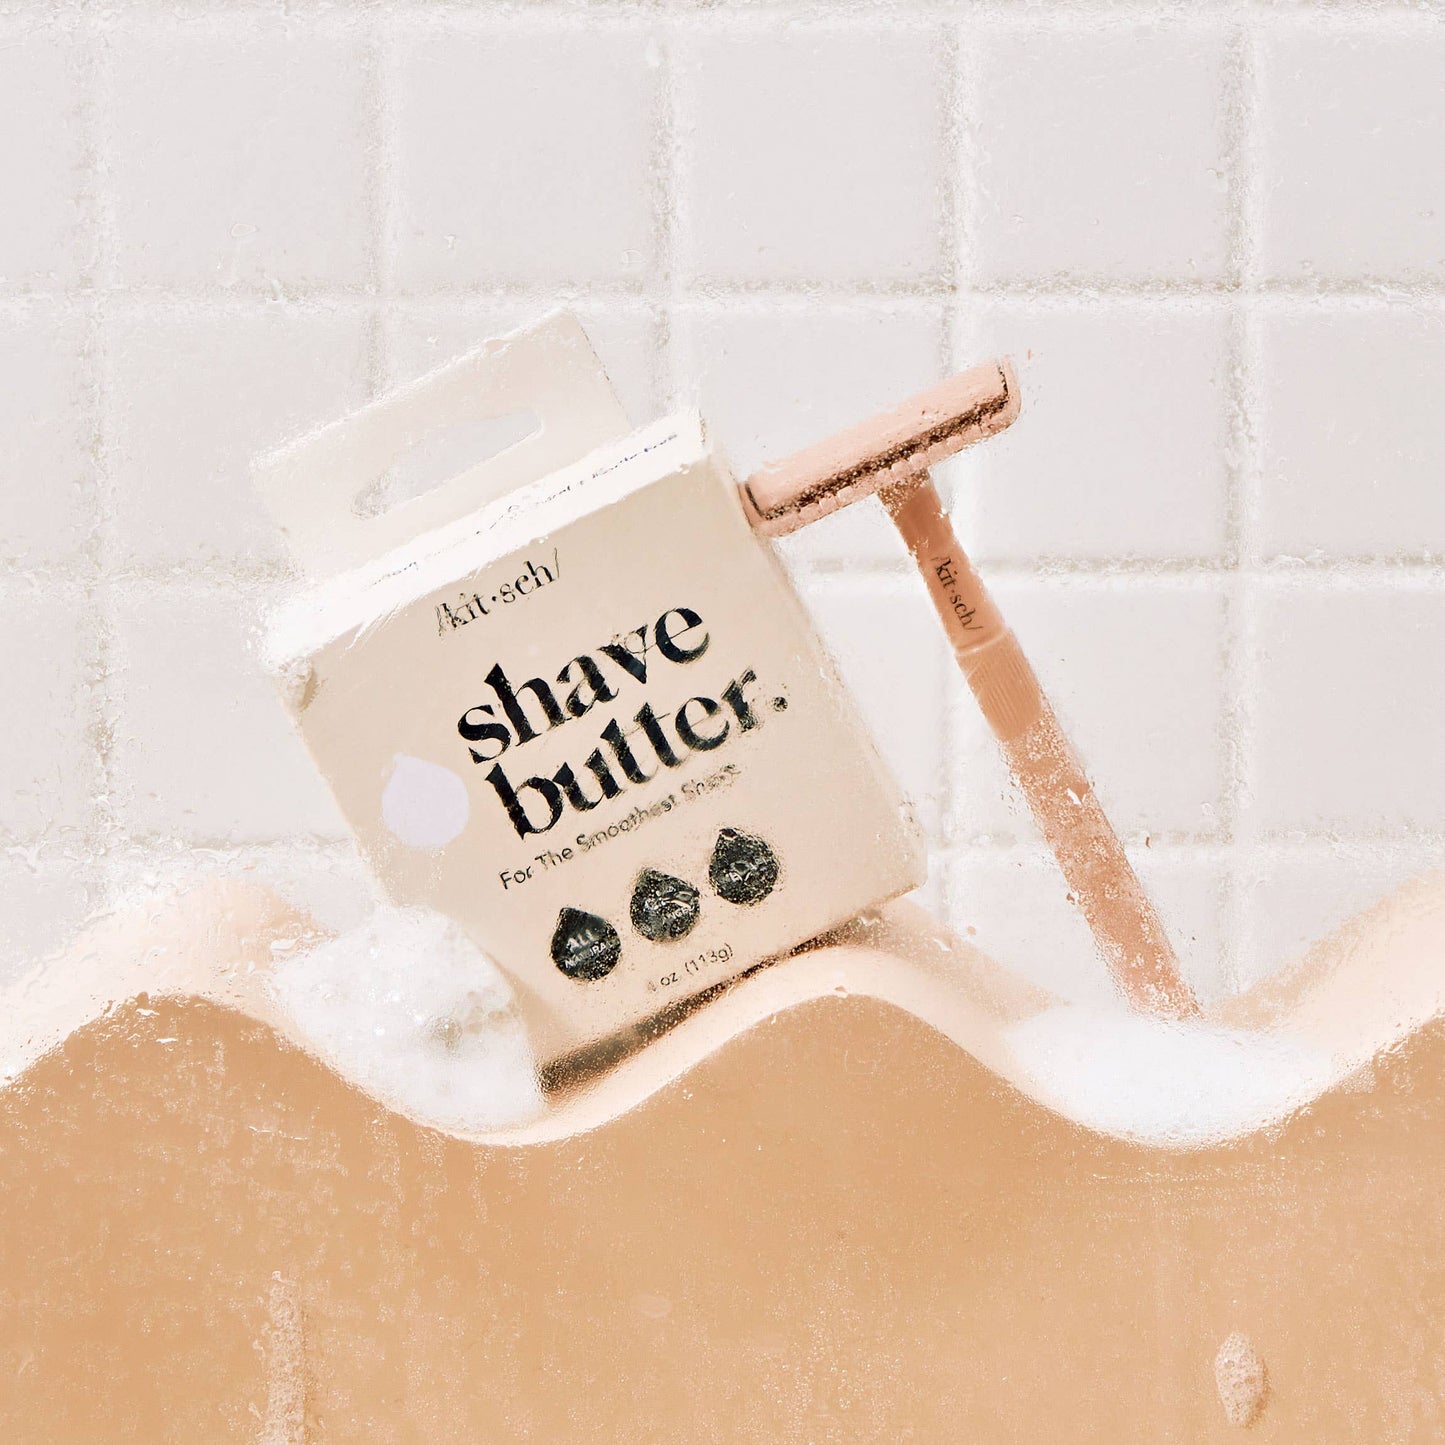 Shave Butter Bar  | Kitsch